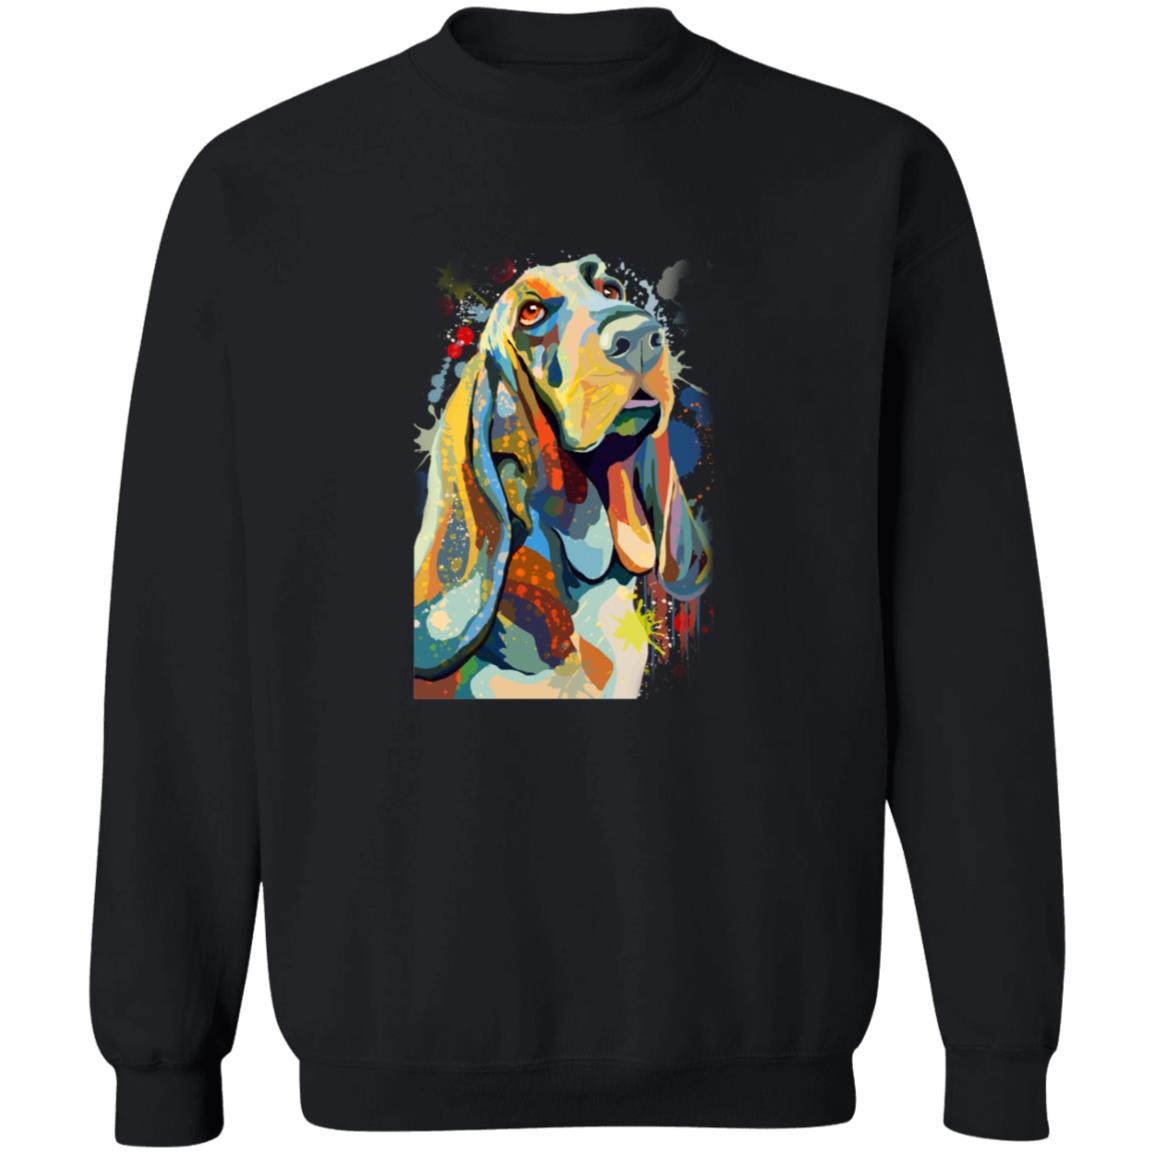 Abstract Basset hound dog Unisex Crewneck Sweatshirt with expressive splashes-Family-Gift-Planet